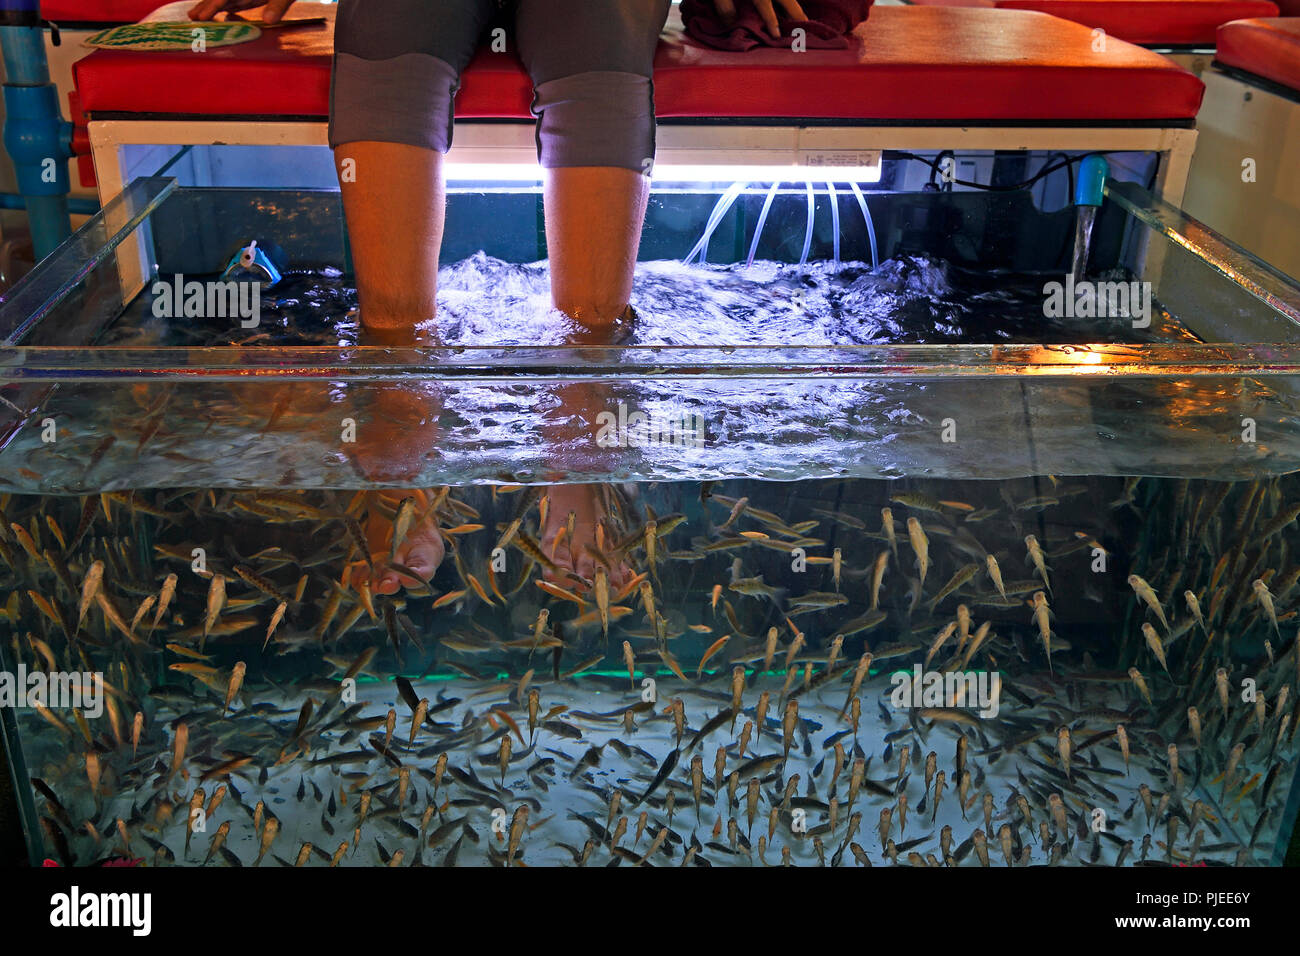 Aquarium with fishing for removing dead skin on feet and legs, Phuket, Thailand, Aquarium mit Fischen zum Entfernen von toter Haut an Füßen und Beinen Stock Photo